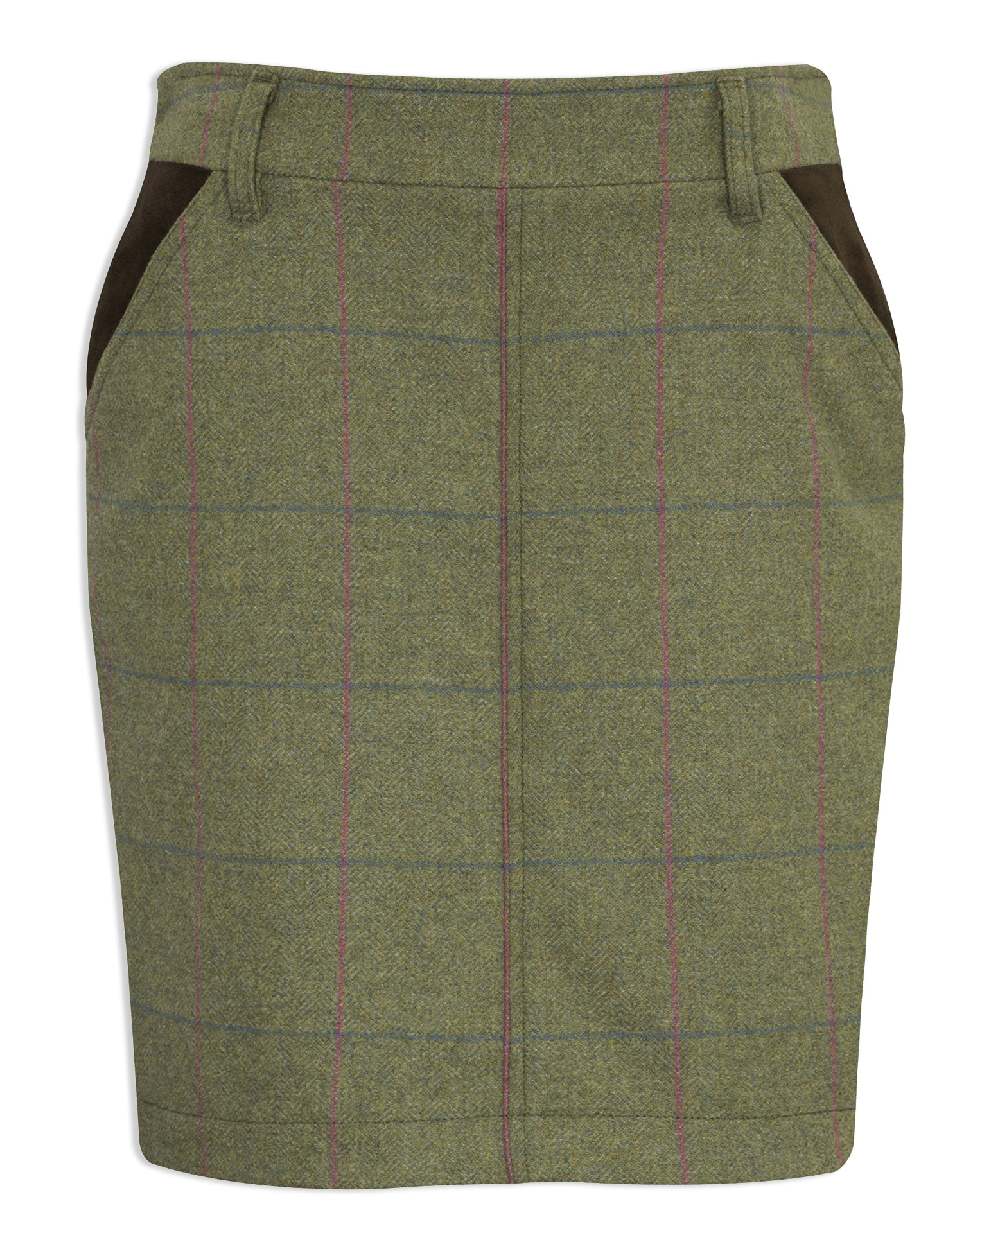 Alan Paine Combrook Tweed Skirt in Juniper 